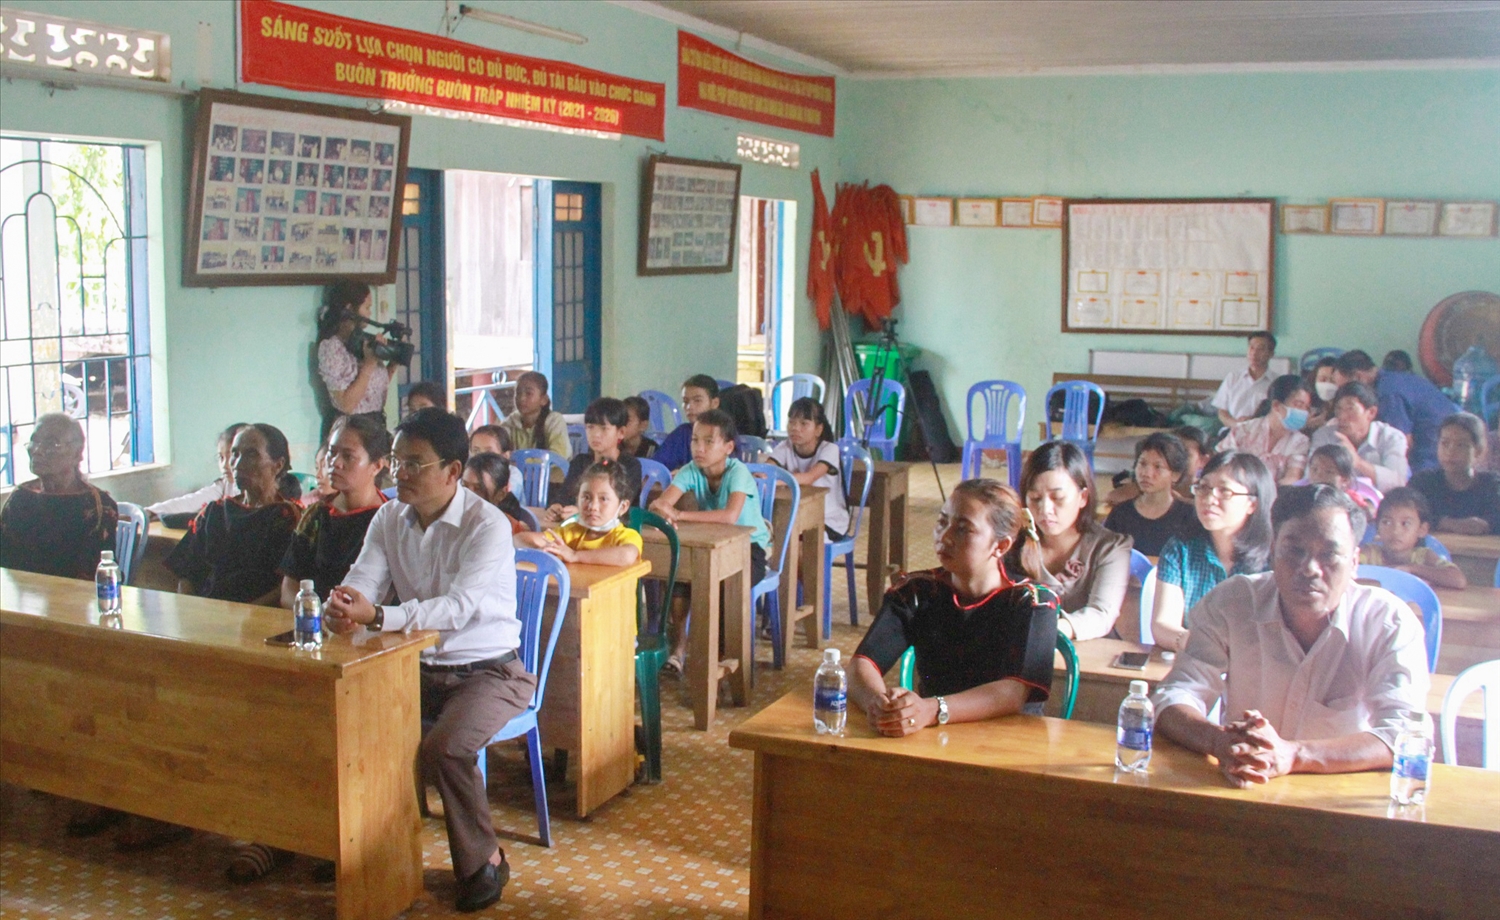 Lễ khai giảng lớp truyền dạy cồng chiêng cho trẻ em tại buôn Trấp, thị trấn Buôn Trấp